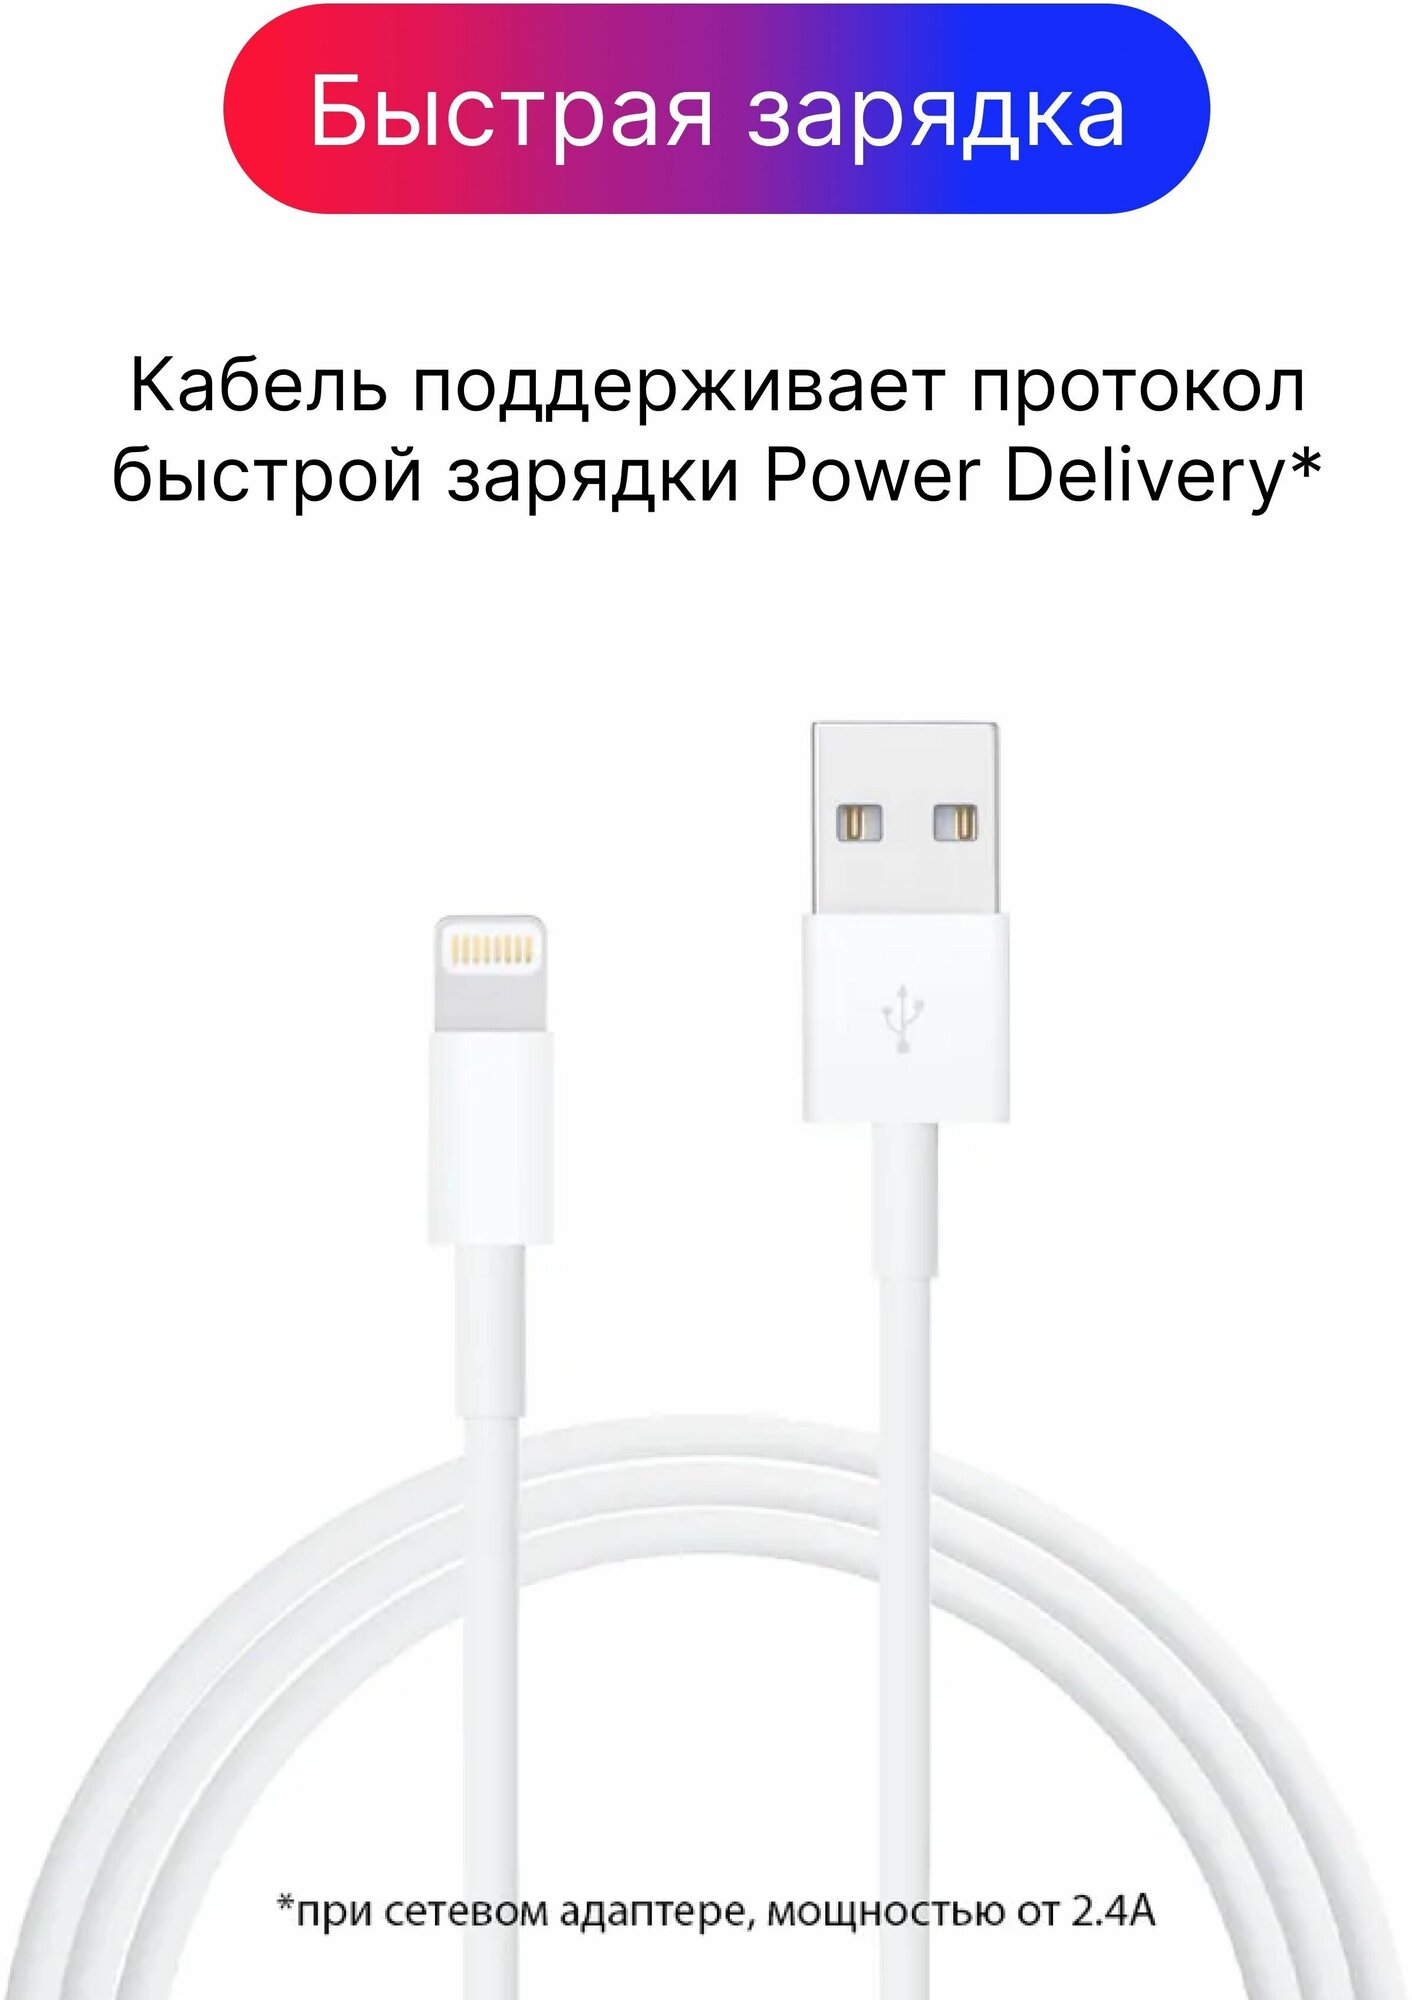 Кабель Lightning - USB Type A (1 метр) для зарядки iPhone, iPad, AirPods, Кабель для Айфона, Быстрая зарядка для iPhone, Провод для Айфона